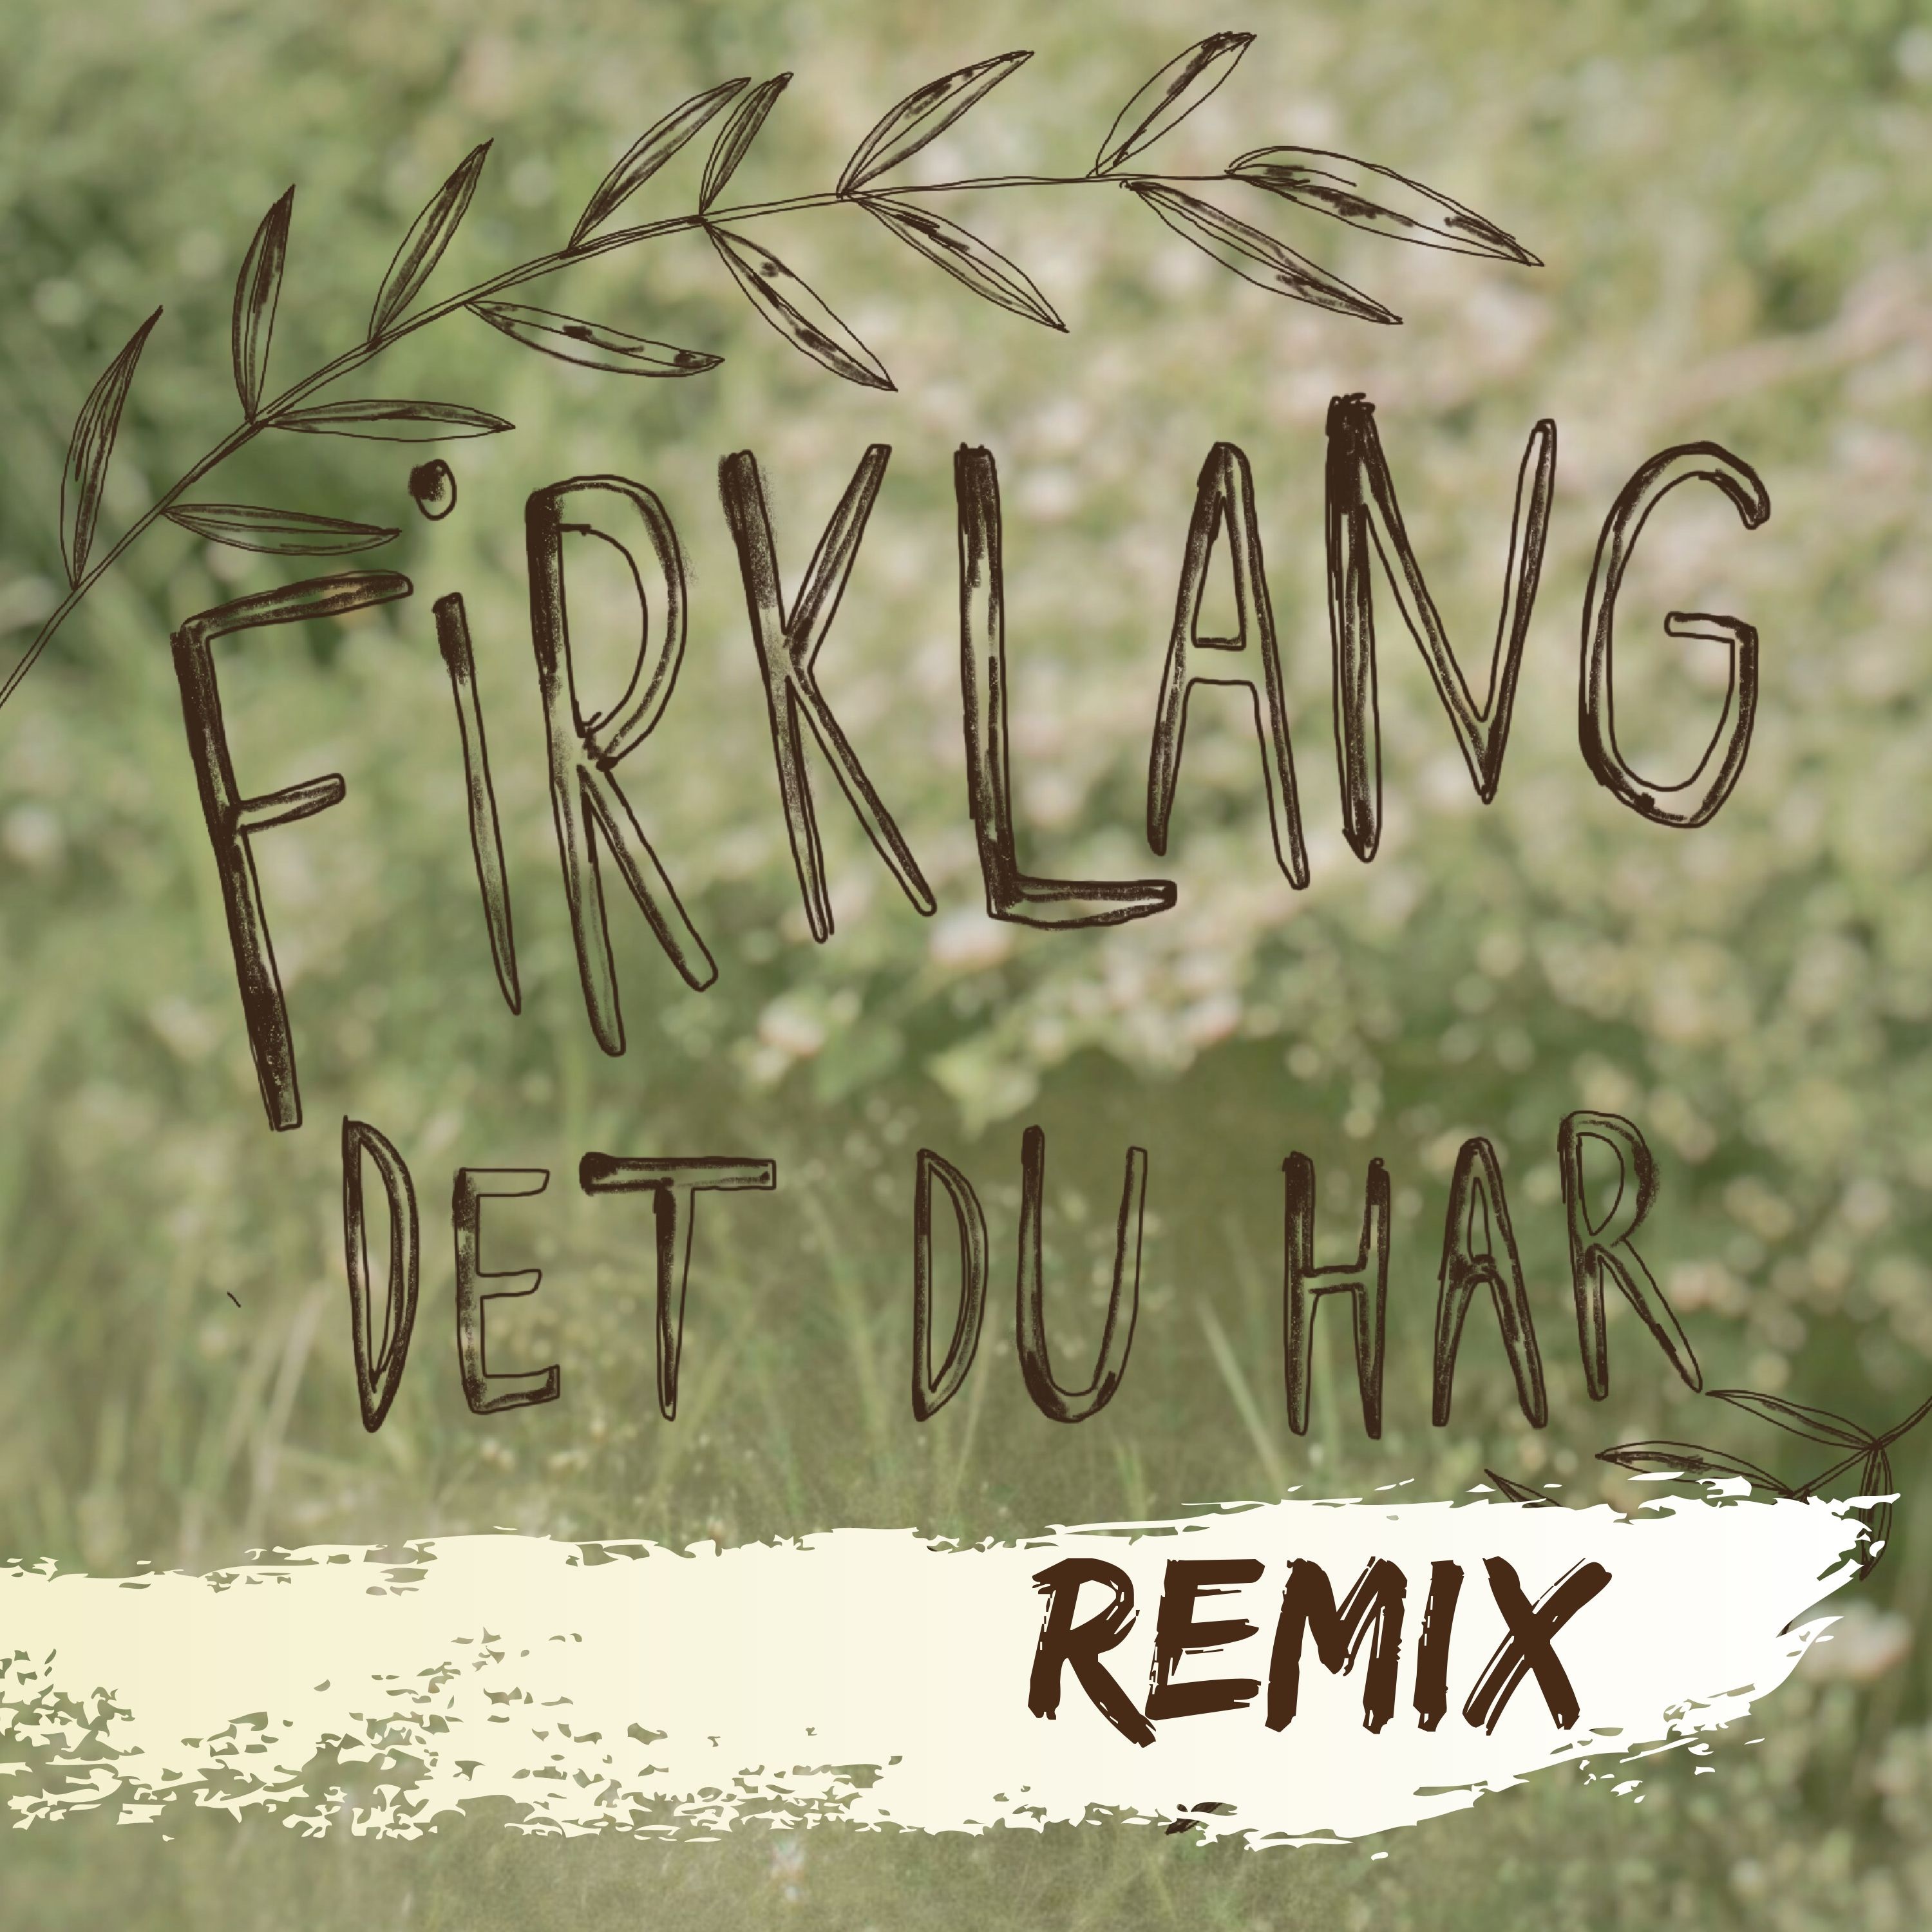 Firklang “Det du har (Remix)”